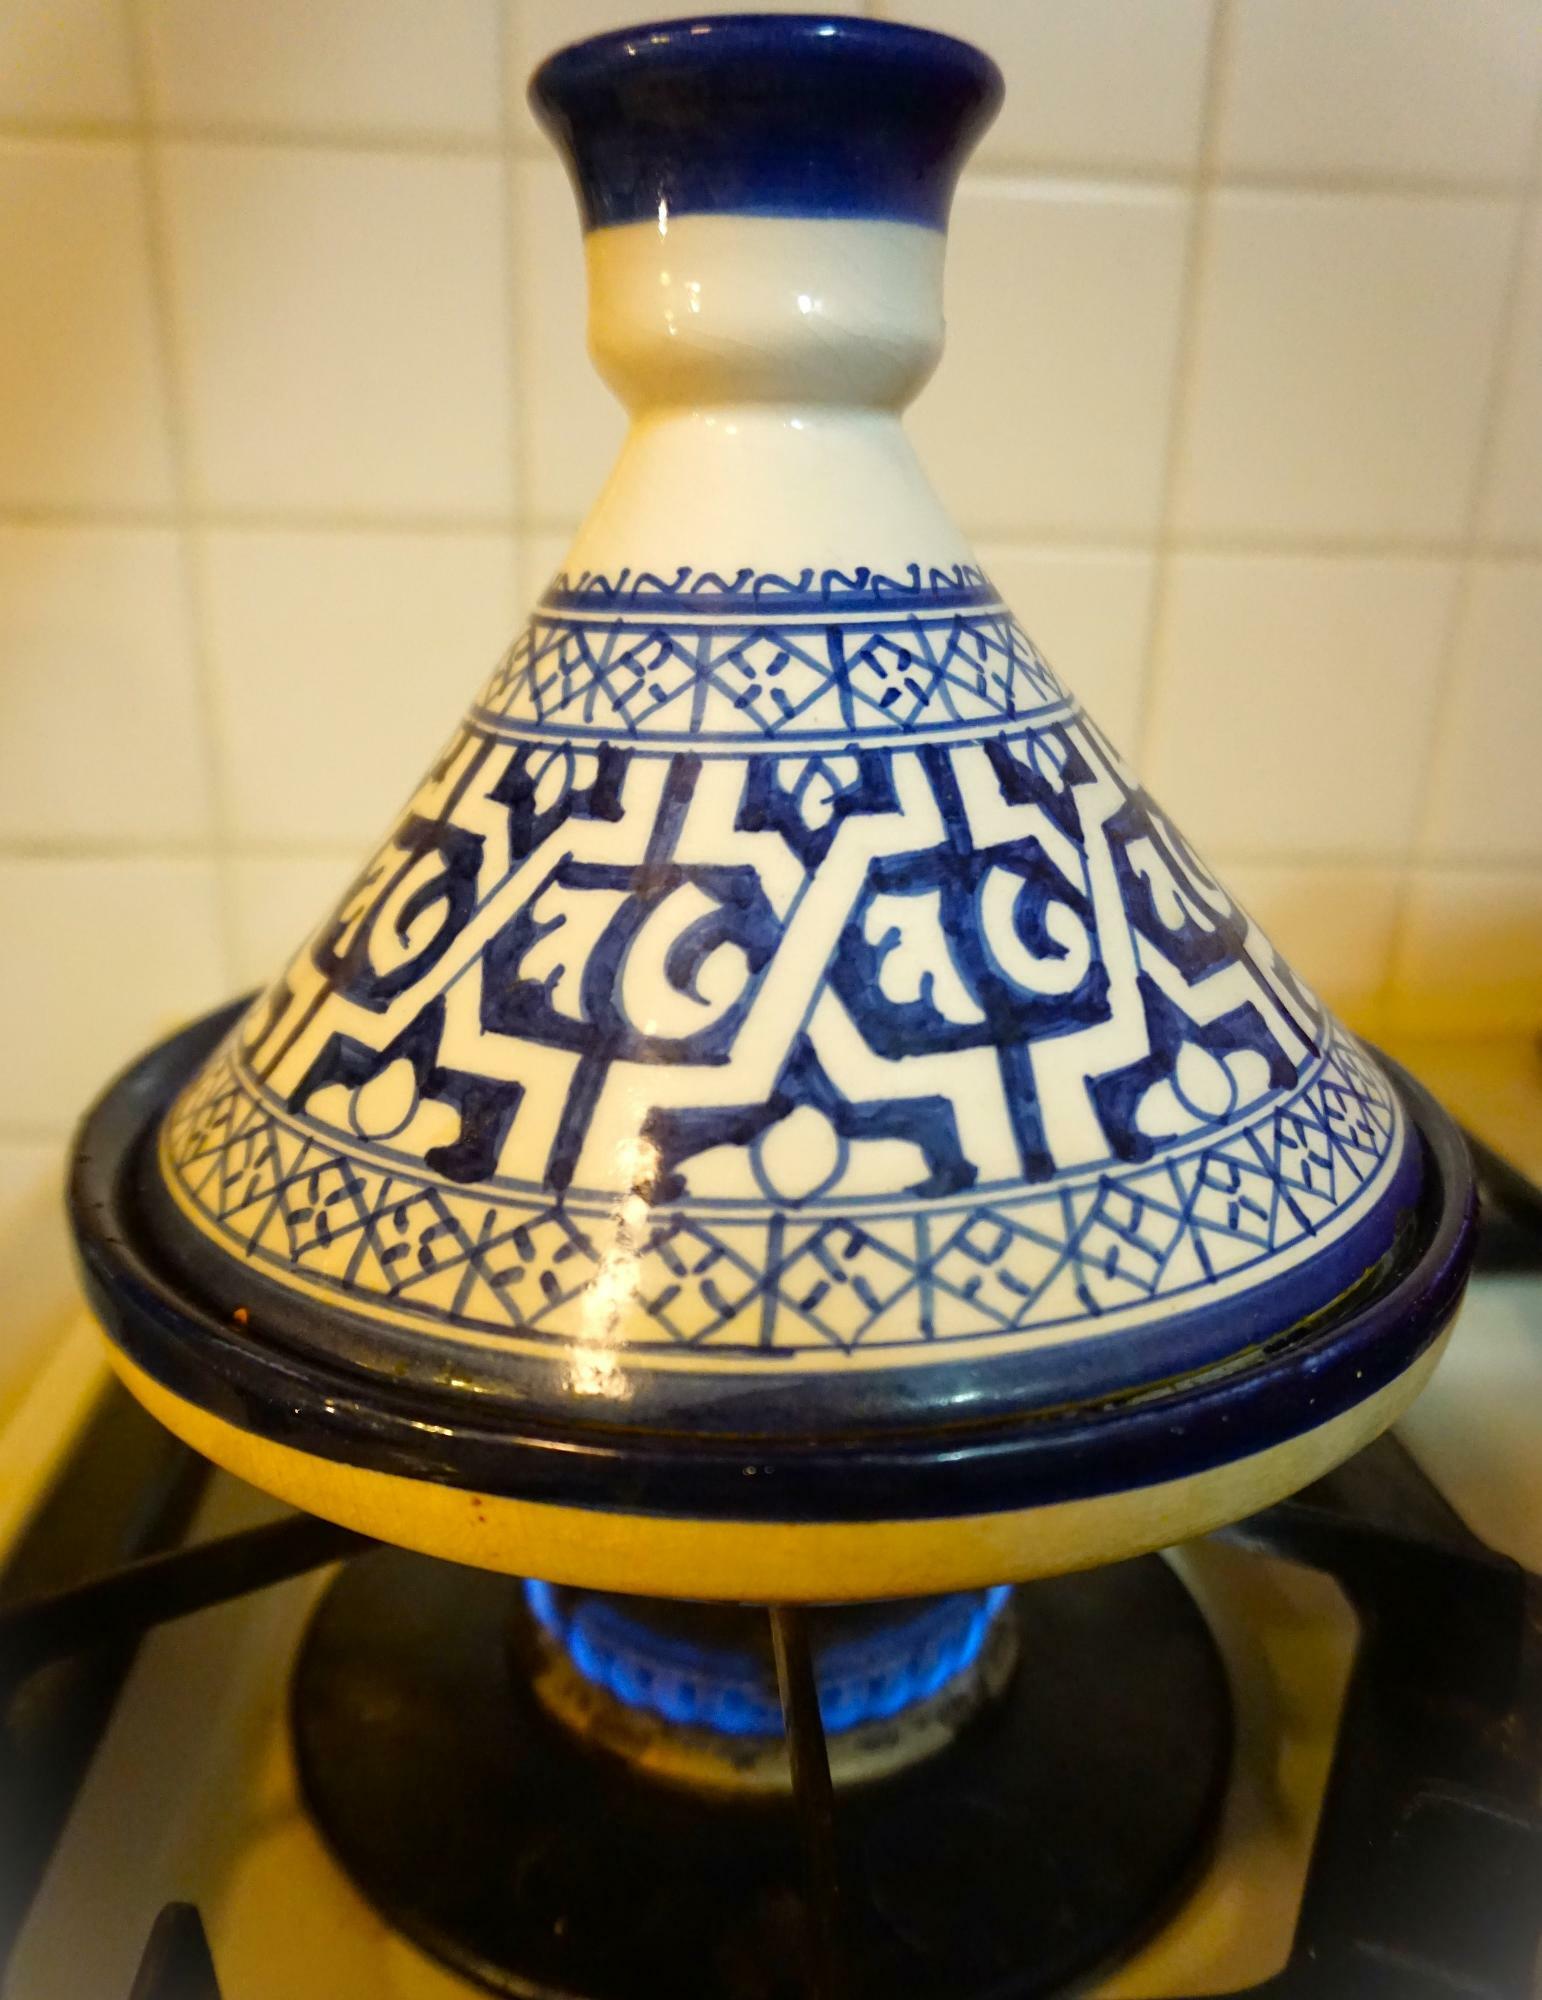 とんがった蓋が特徴のタジン鍋は、モロッコ伝統の調理器具。これはモロッコの古都フェズで購入した陶磁器のタジン鍋ですが、市販のタジン鍋はデザインも素材もさまざまです